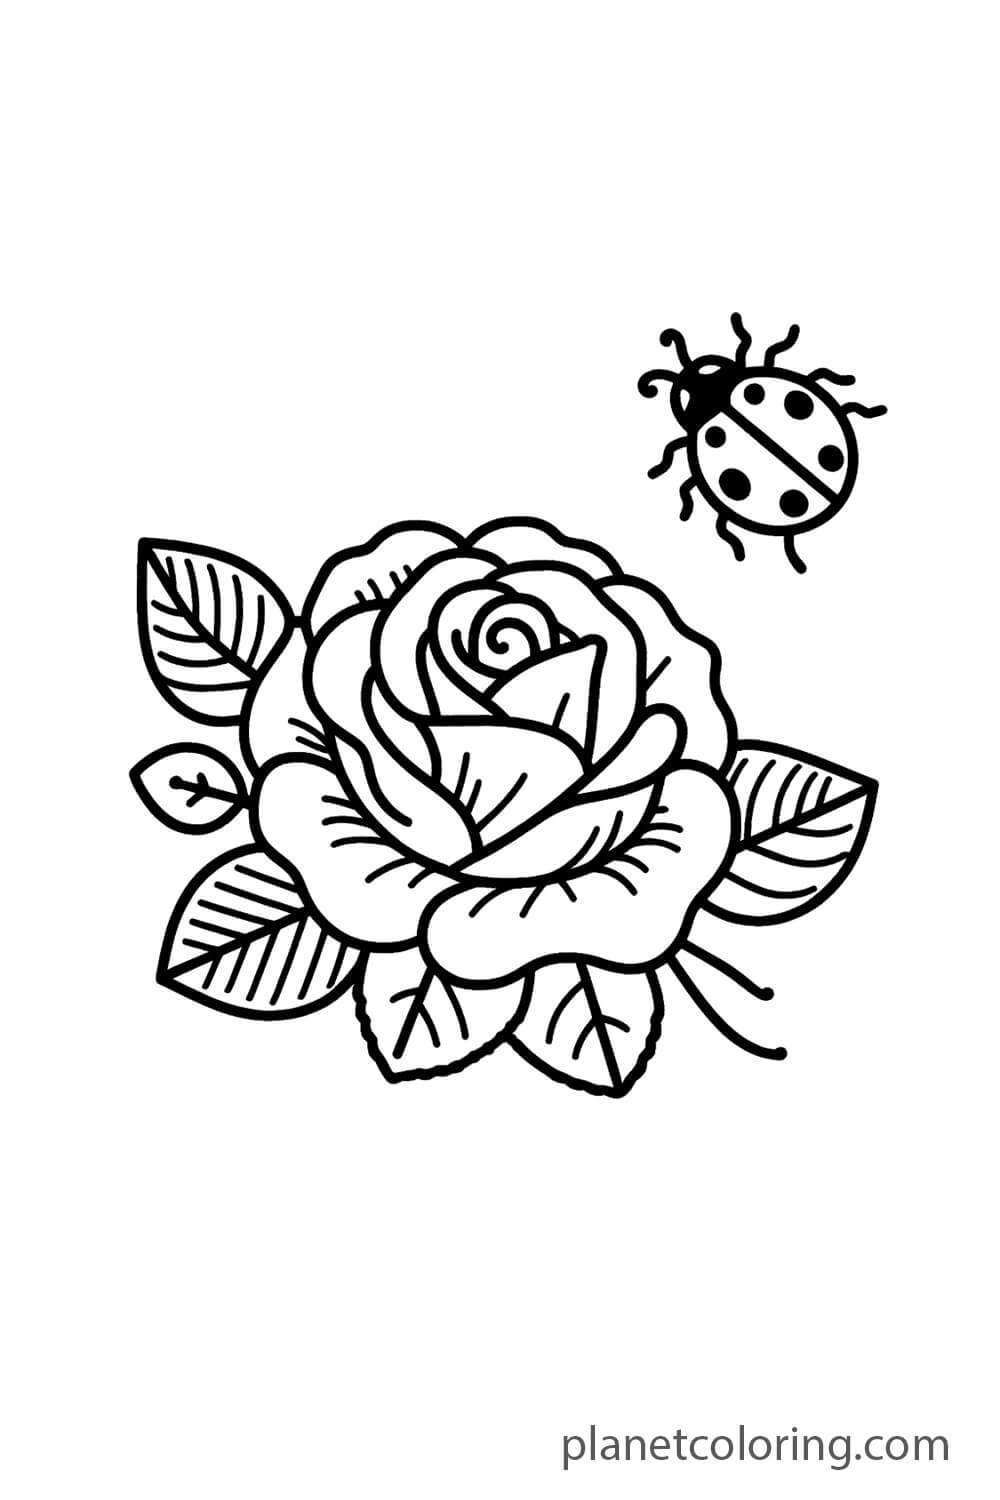 Rose and Ladybug